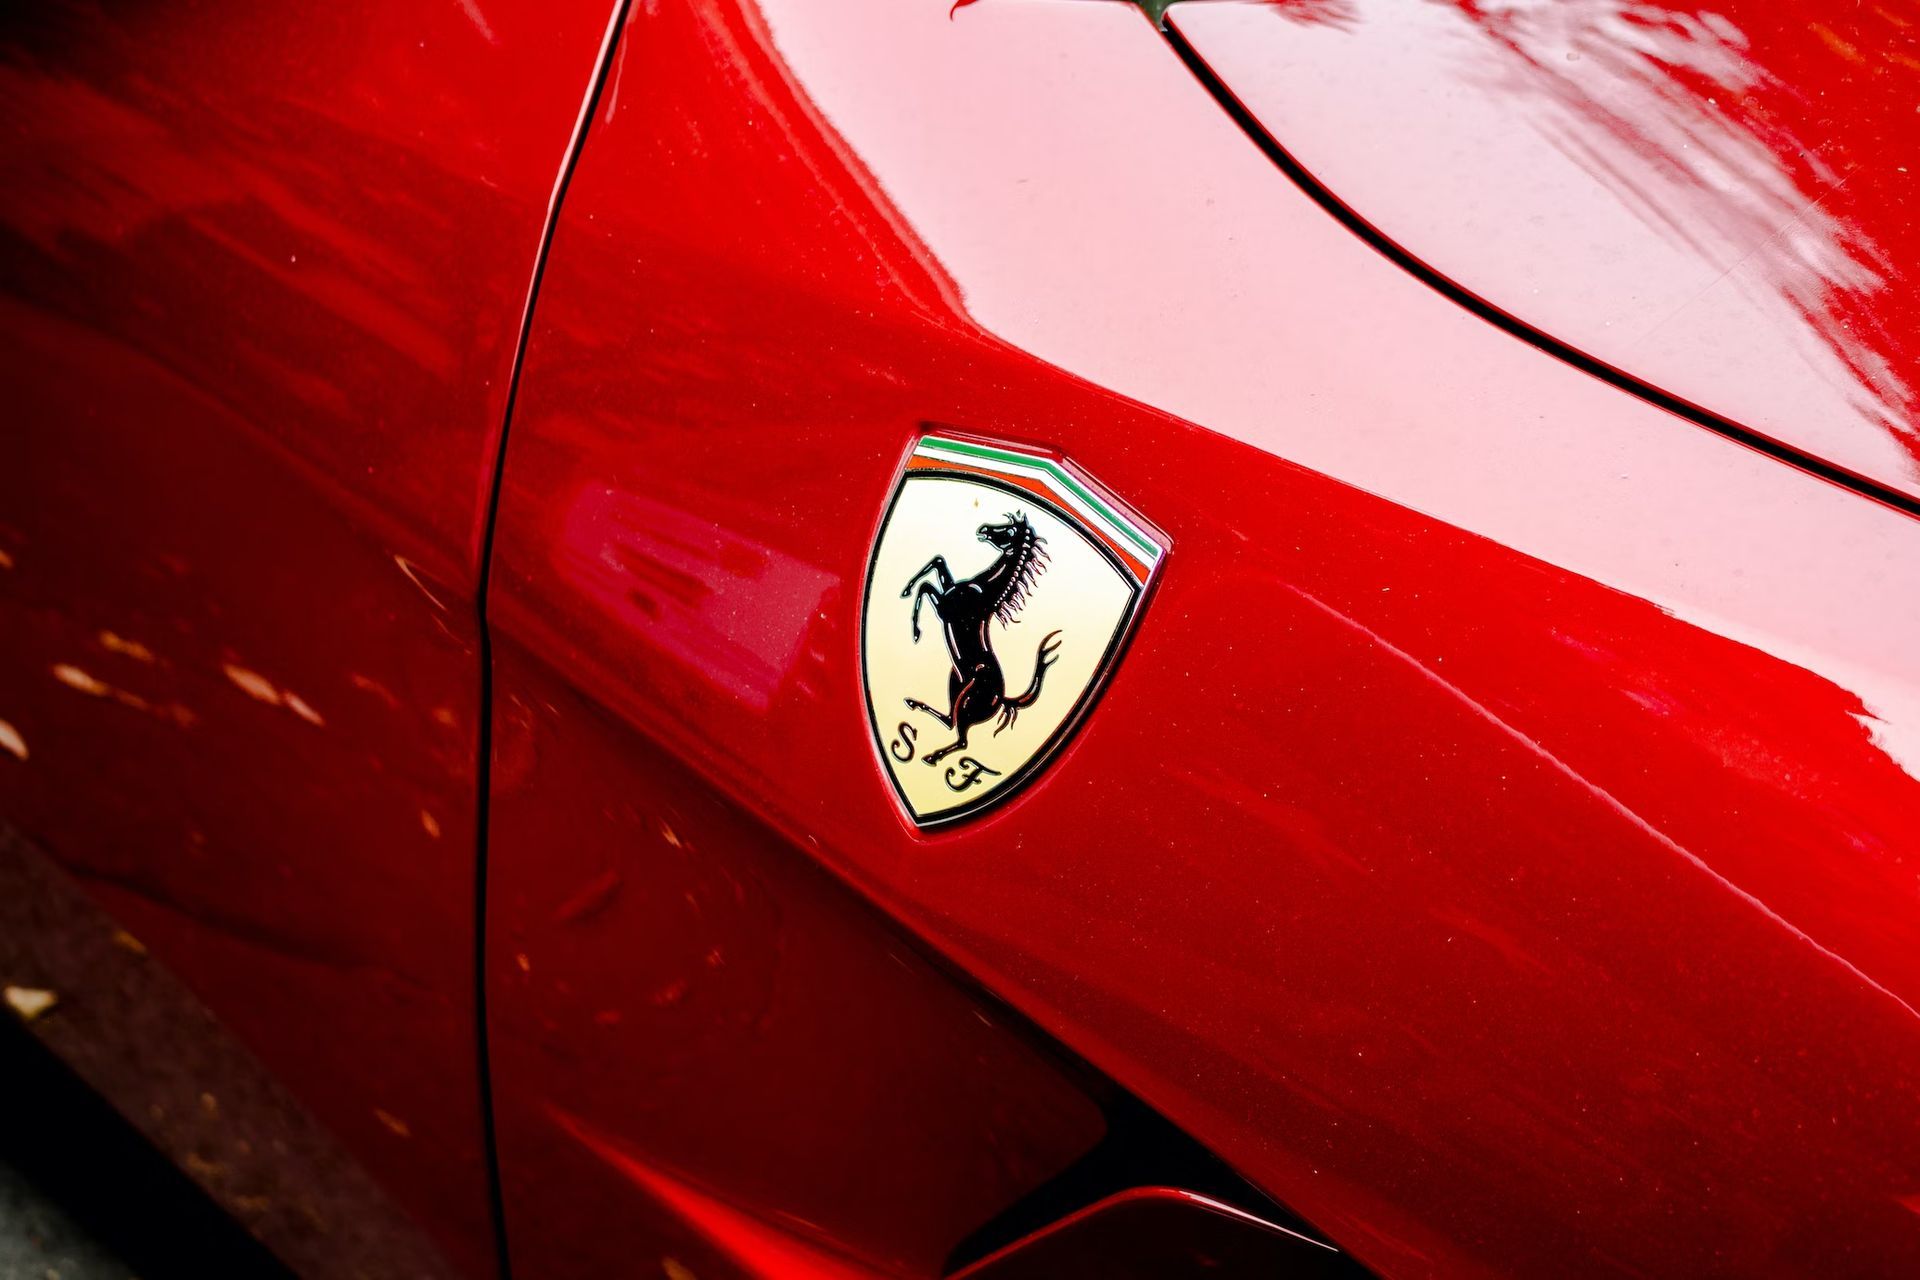 Ferrari-Datenverletzung legt Kundeninformationen und Zahlungsdaten sicher offen